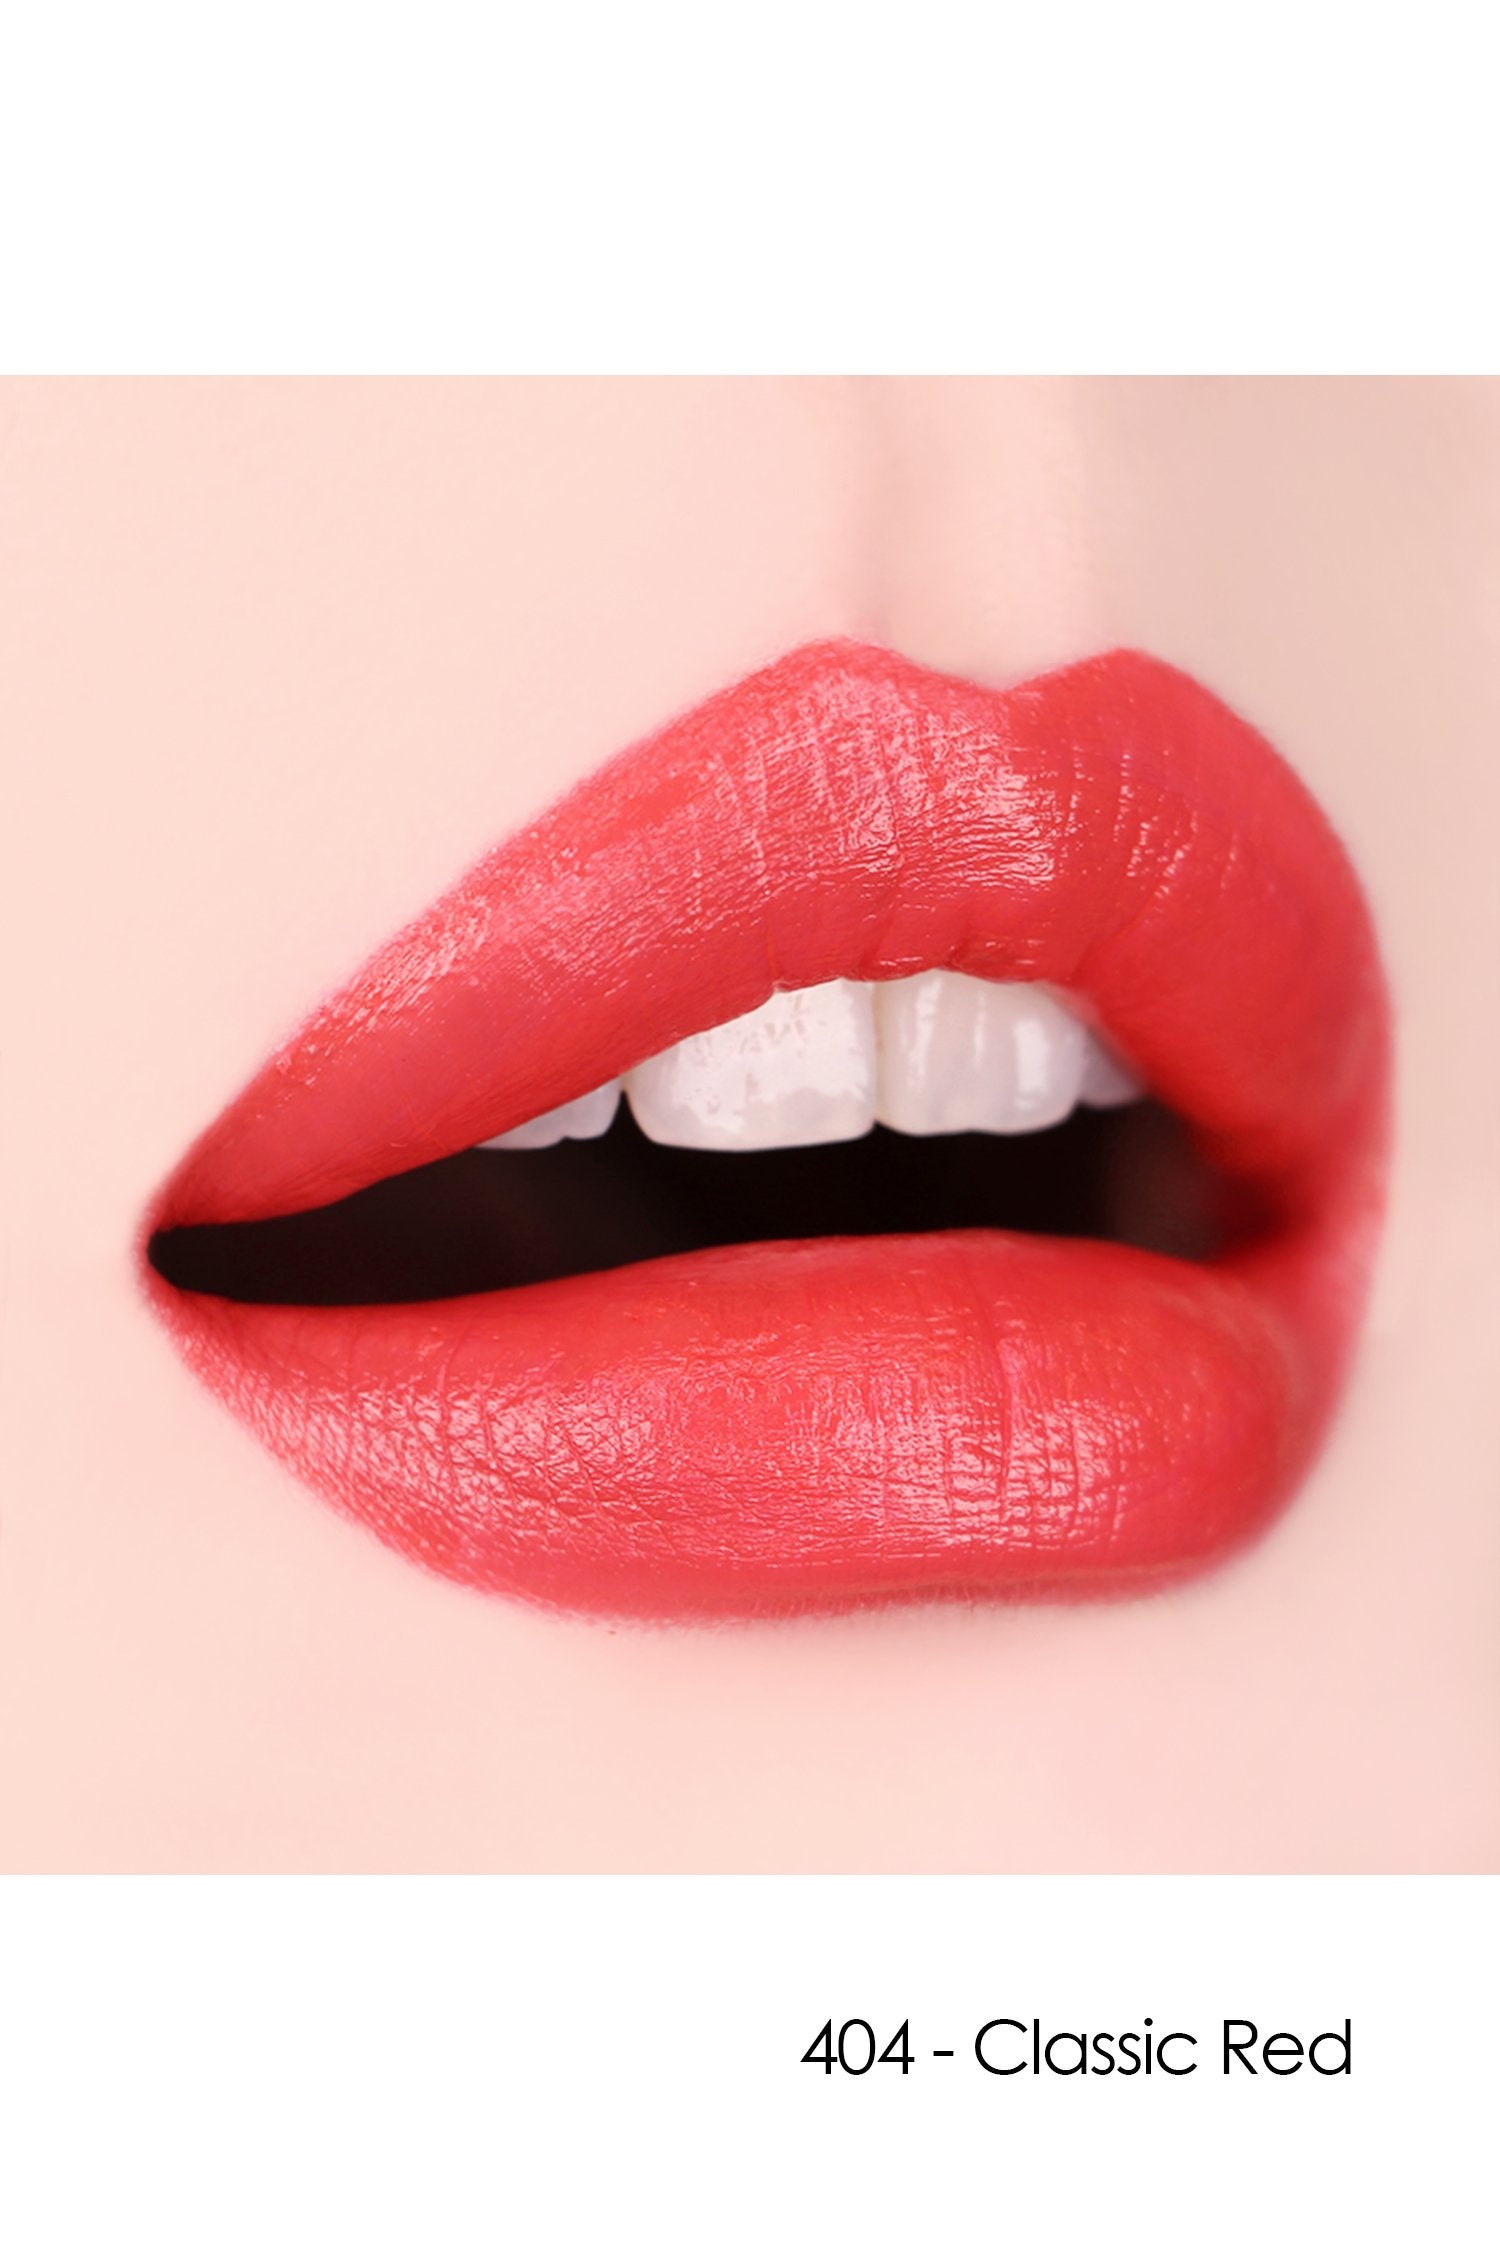 Lèvres avec Sui Black - Rouge S 404 Classic Red